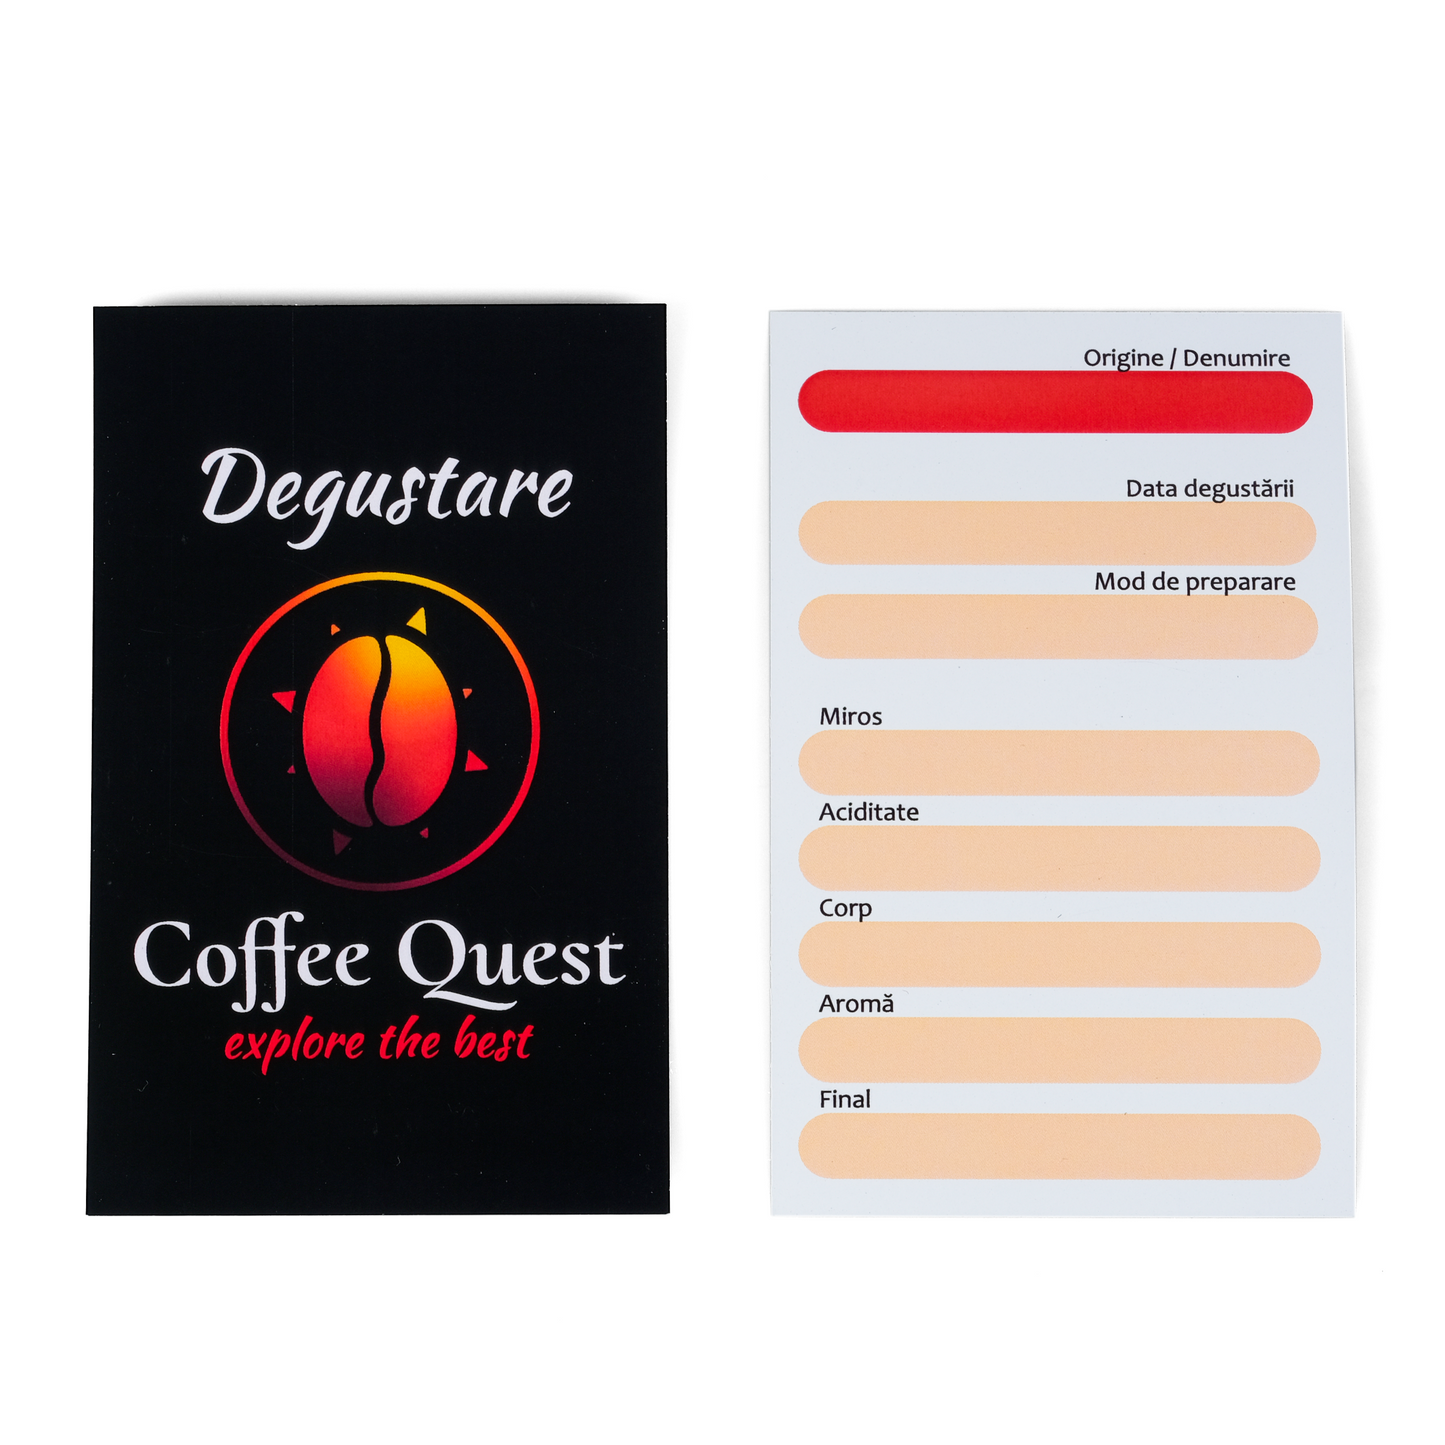 Degustare Coffee Quest